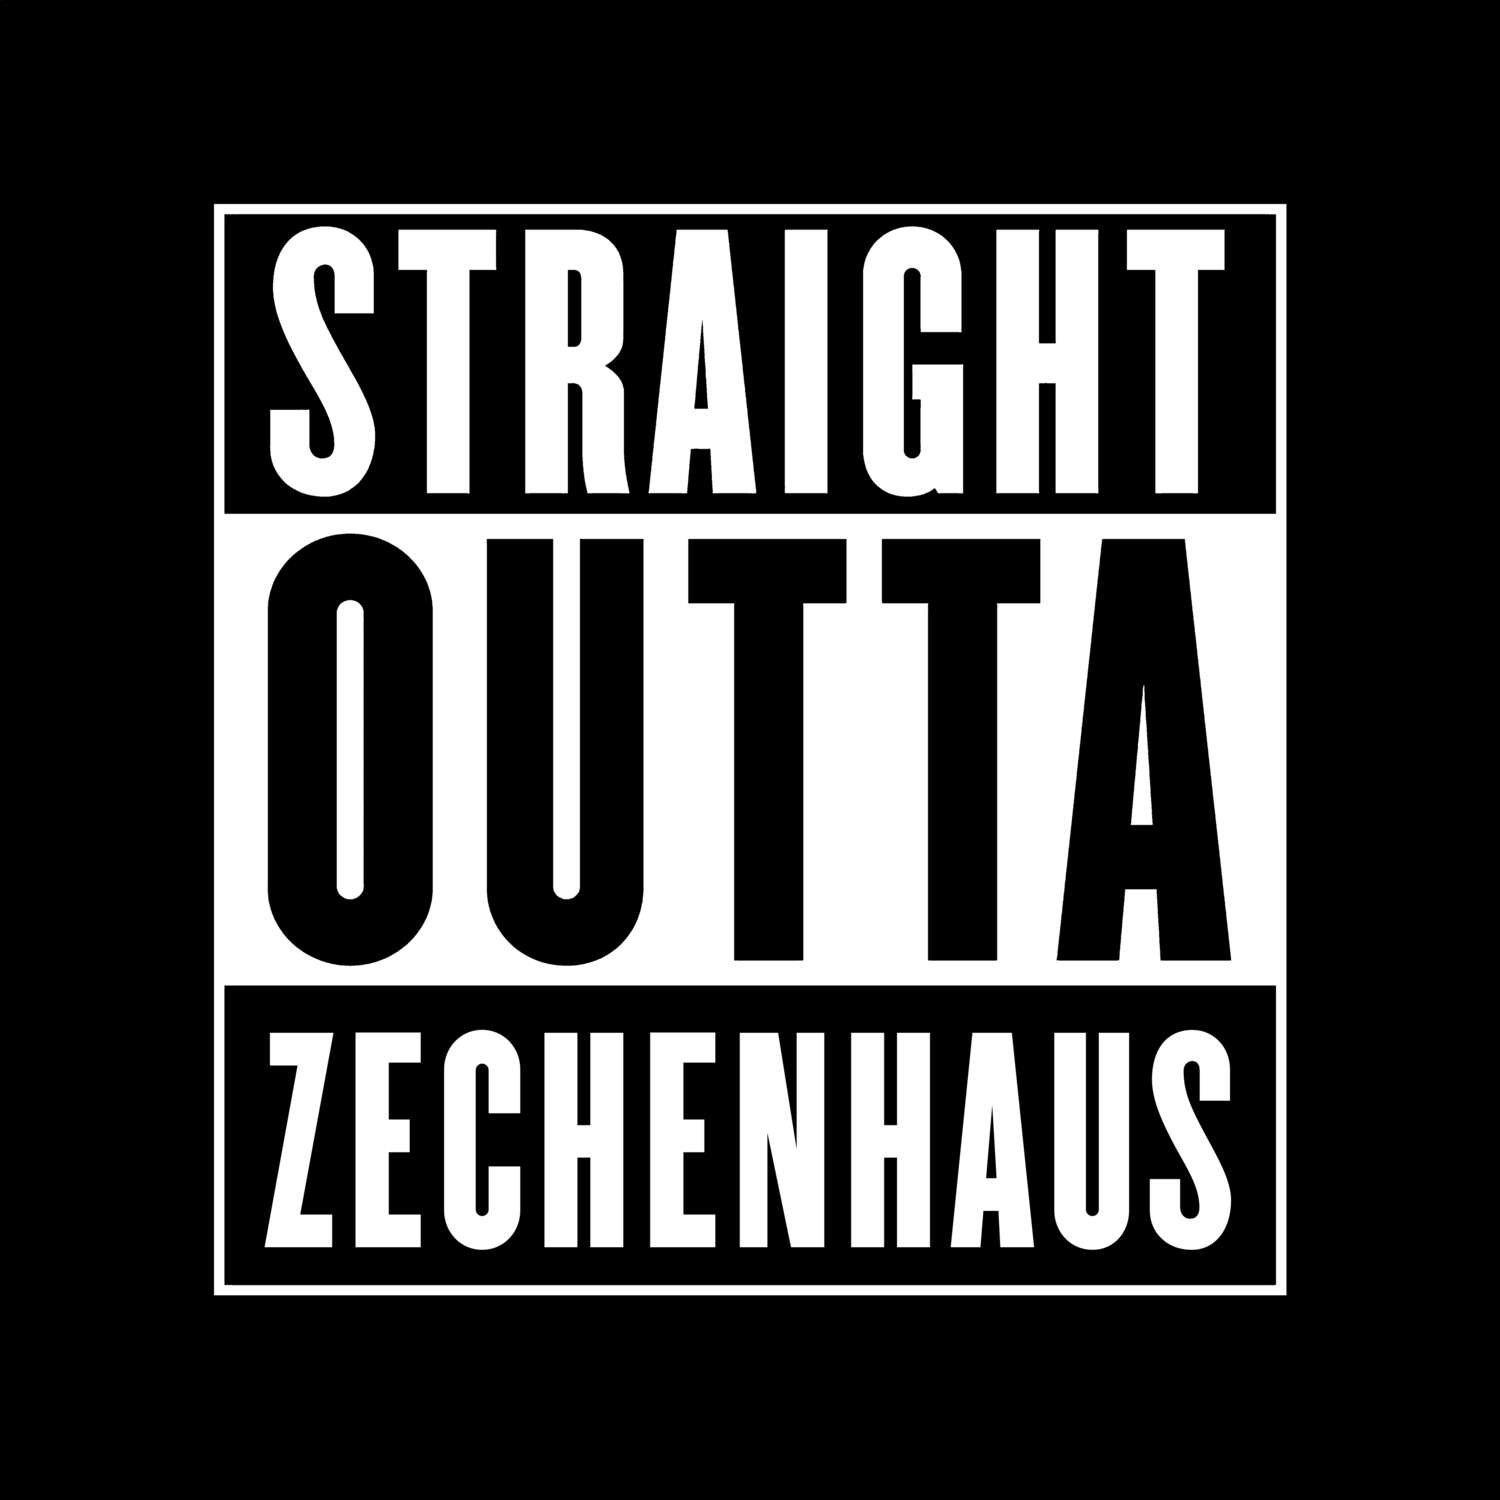 Zechenhaus T-Shirt »Straight Outta«